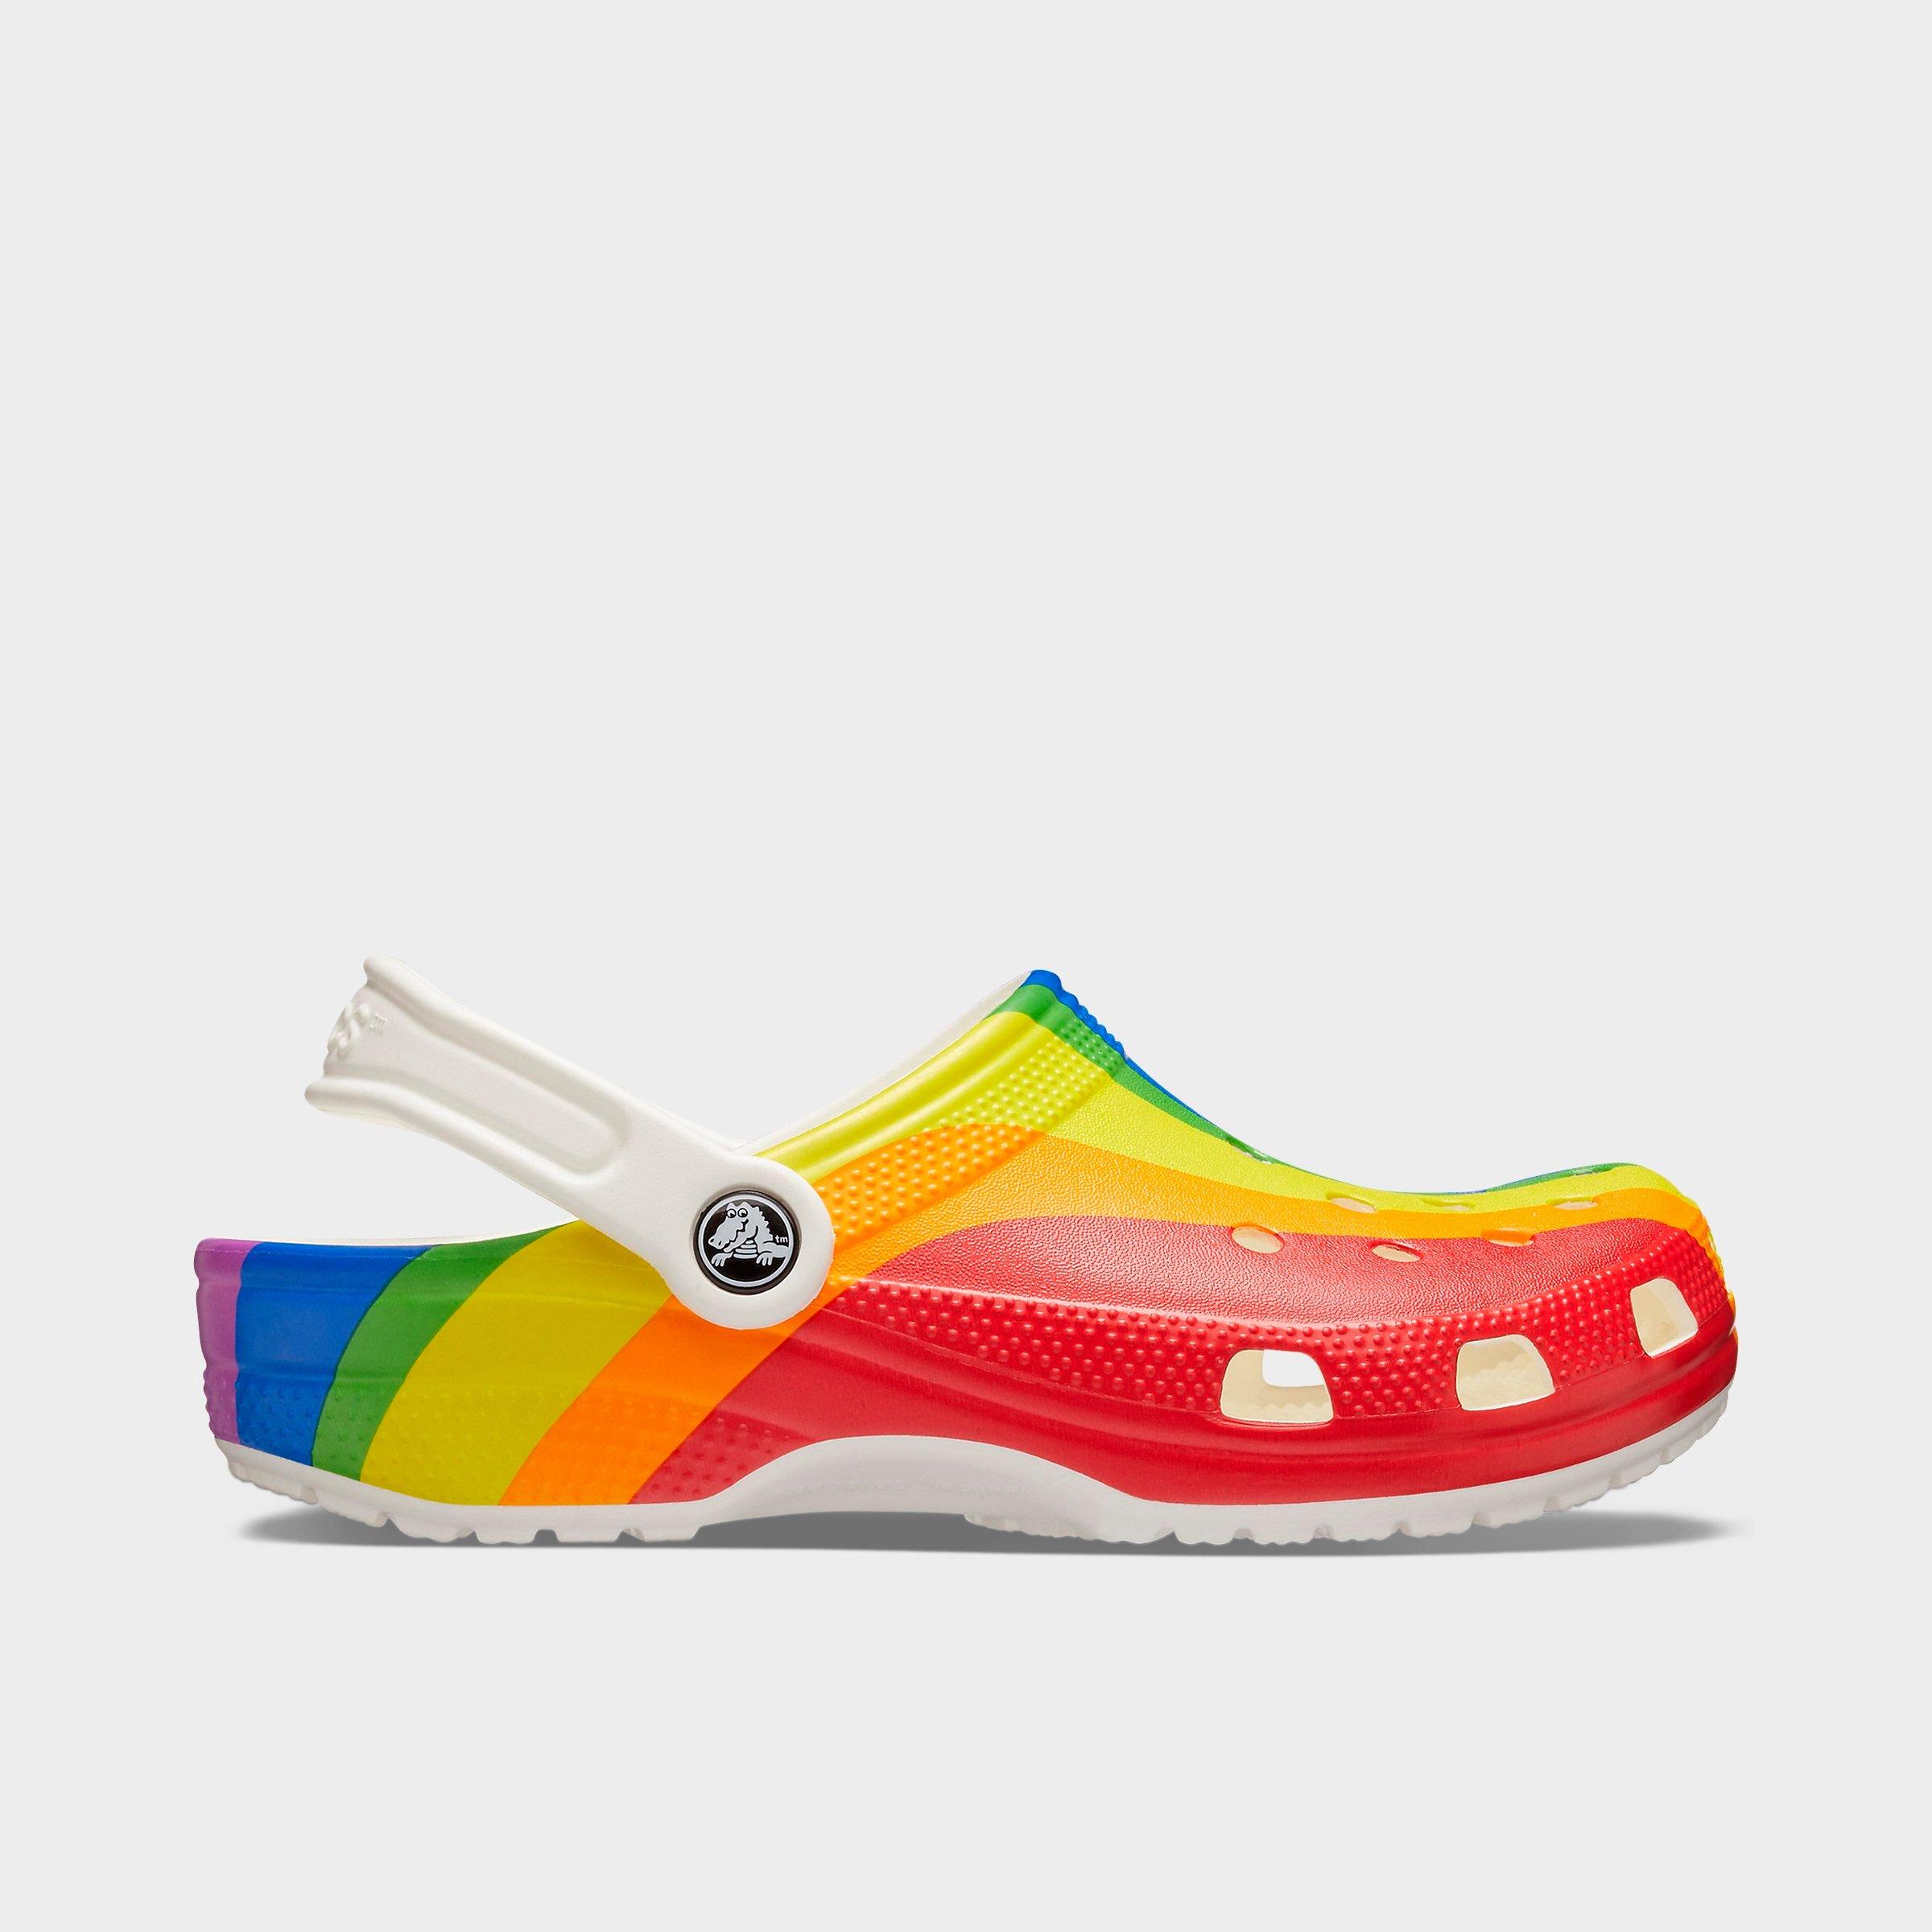 rainbow tie dye crocs